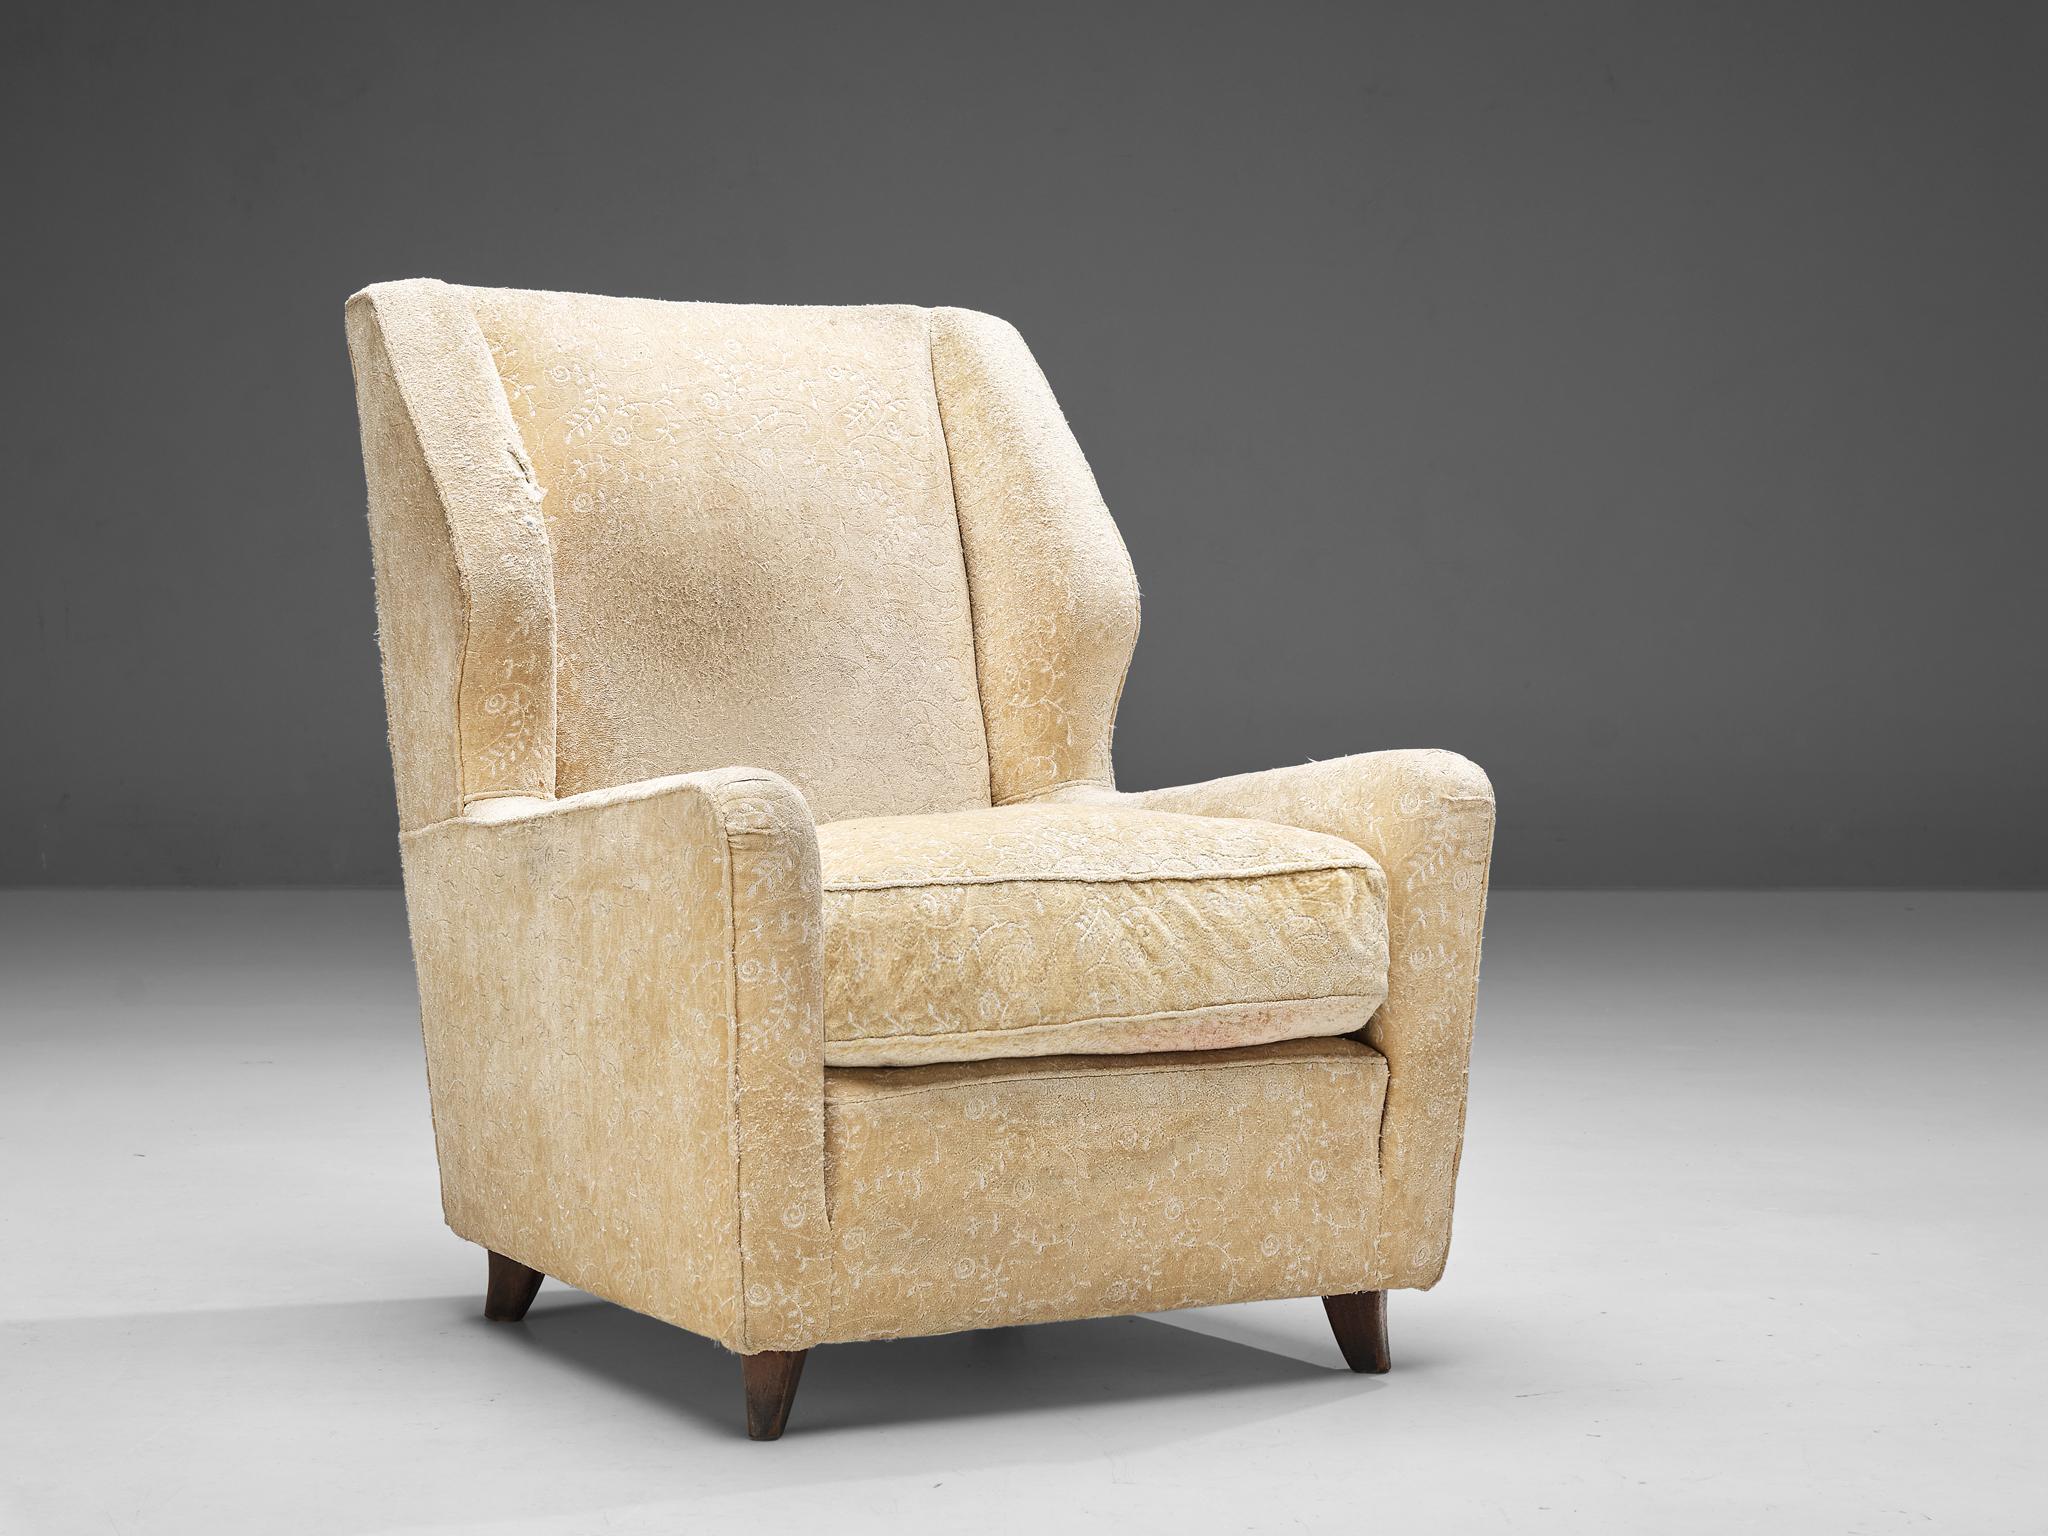 Loungesessel, Holz, Stoff, Dänemark, 1950er Jahre

Massiver dänischer Sessel mit geblümter Polsterung. Der Stuhl hat niedrige Armlehnen und eine Rückenlehne mit zwei Flügeln, die den Sitz einrahmen. Besonders von der Seite betrachtet, erhält das